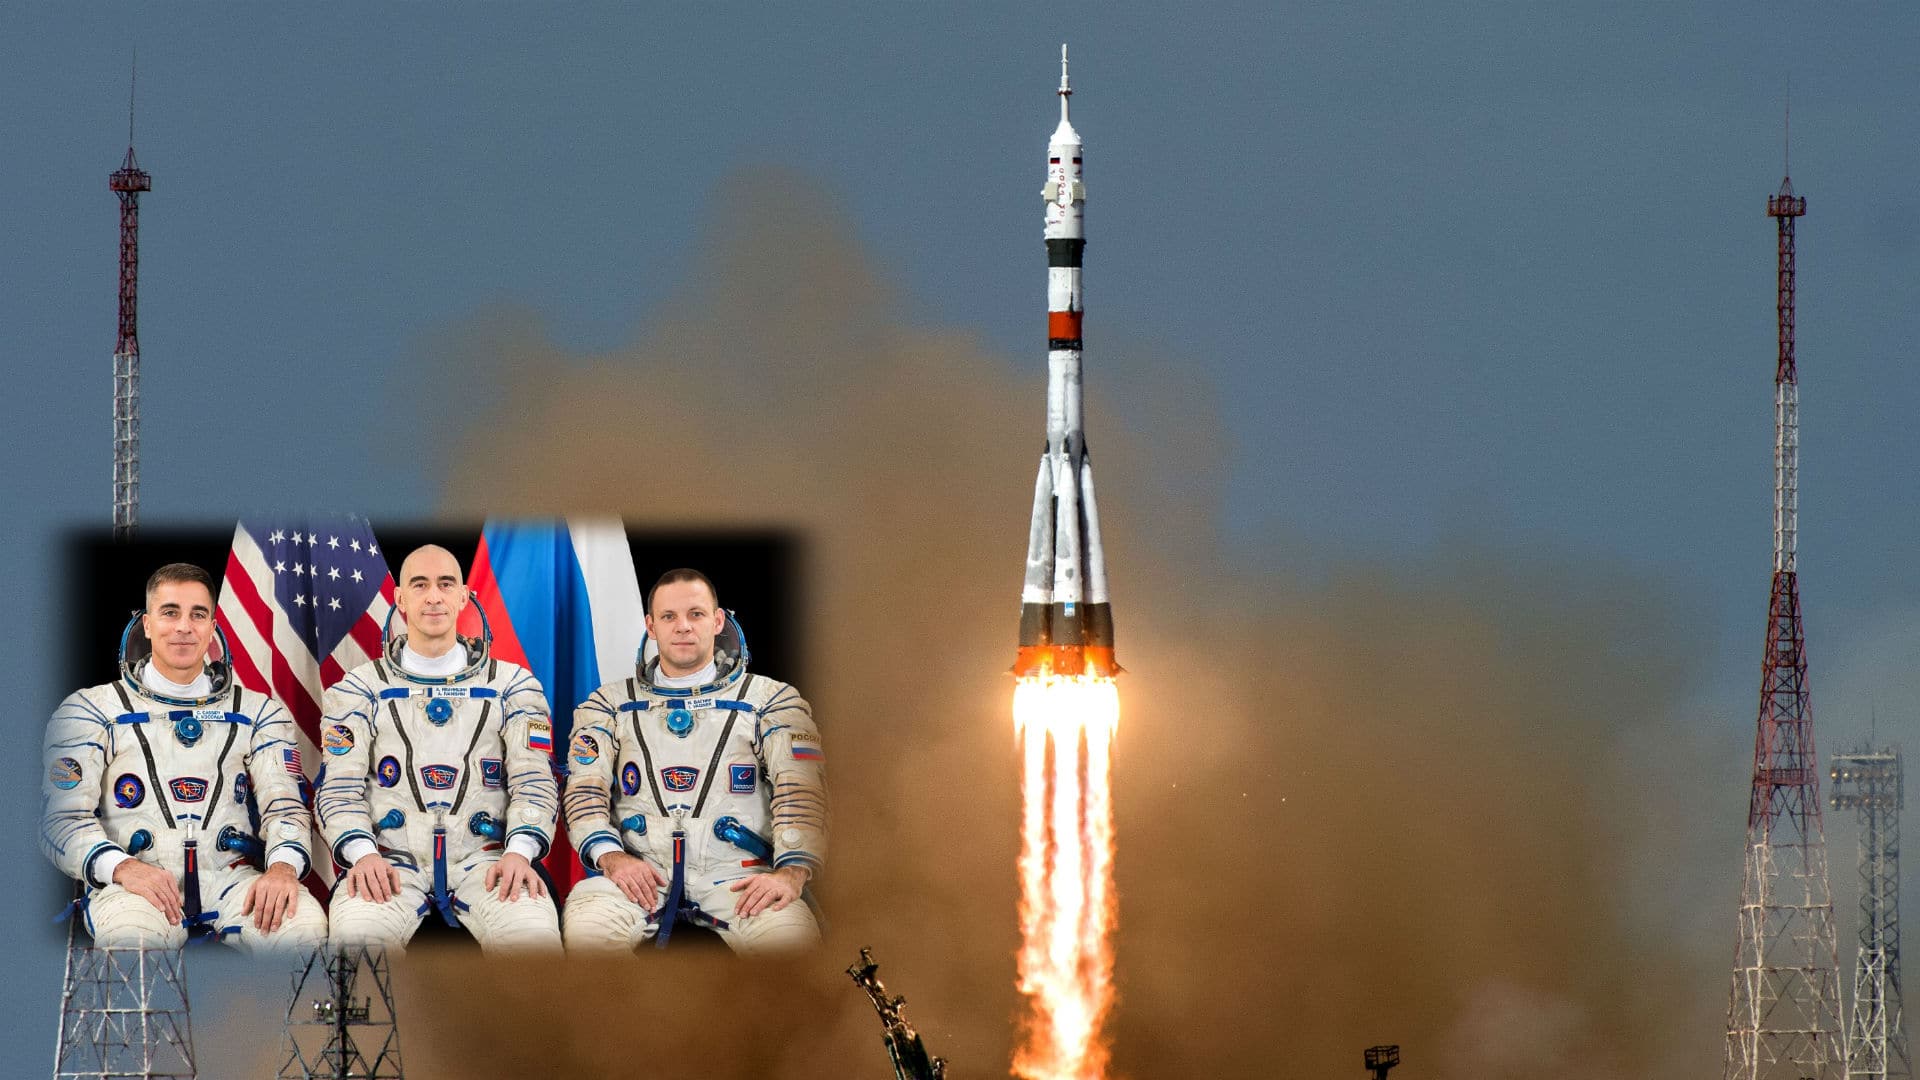 El 9 de abril se llevó a cabo el primer lanzamiento tripulado del año: la cápsula Soyuz MS-16 con el astronauta Christopher Cassidy y los cosmonautas Anatoli Ivanishin e Ivan Vagner. [Roscosmos]